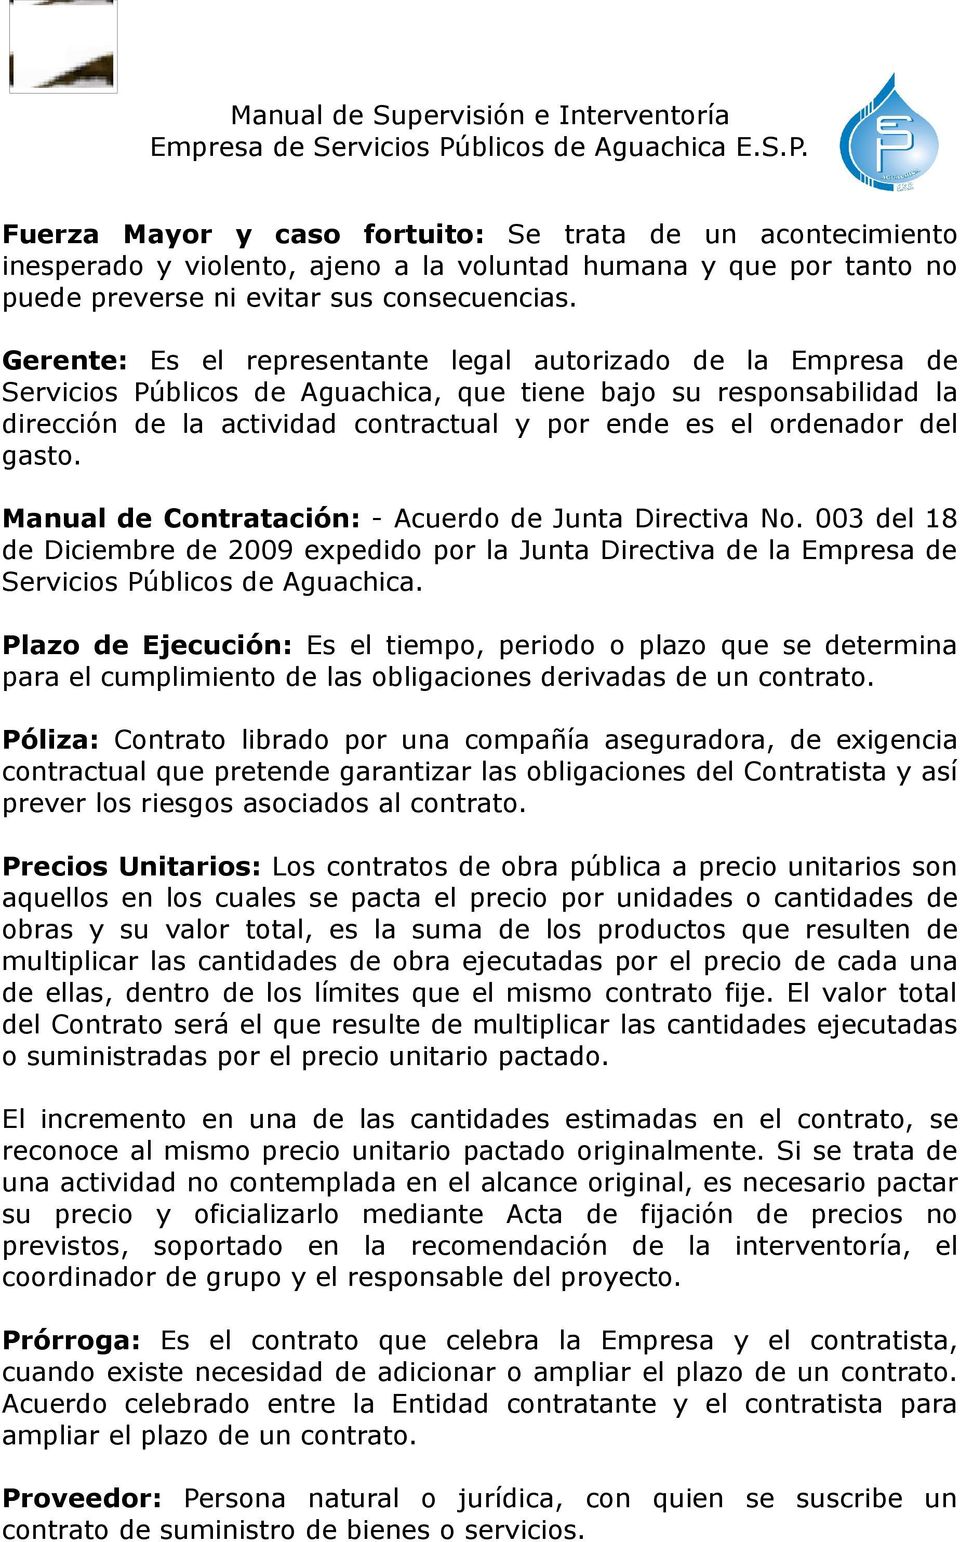 del gasto. Manual de Contratación: - Acuerdo de Junta Directiva No. 003 del 18 de Diciembre de 2009 expedido por la Junta Directiva de la Empresa de Servicios Públicos de Aguachica.